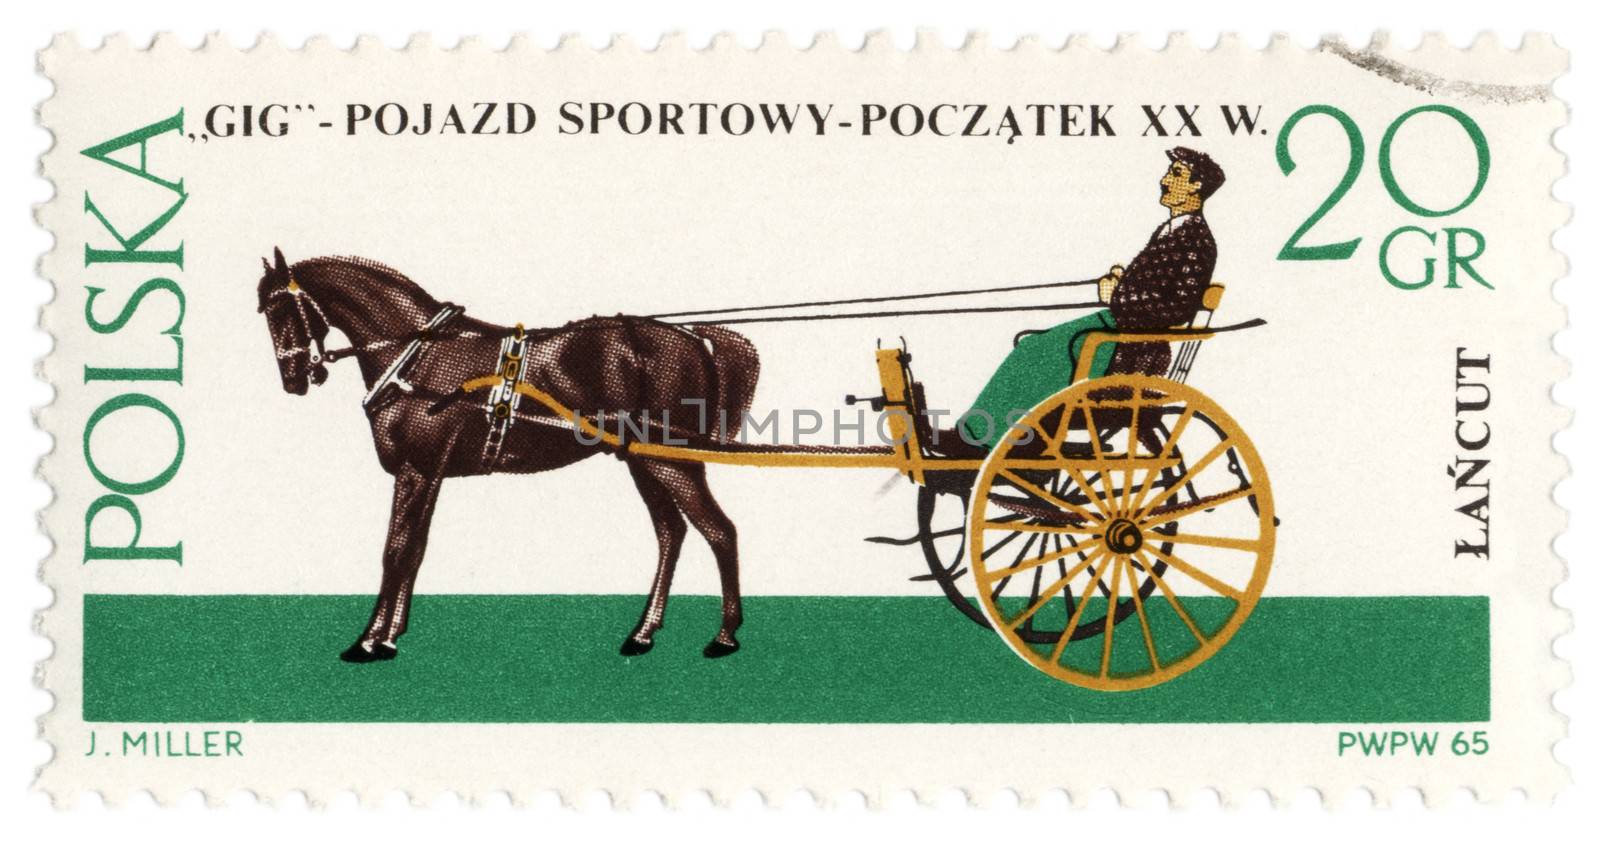 POLAND - CIRCA 1965: a stamp printed in Poland shows old carriage - gig (XX century), circa 1965